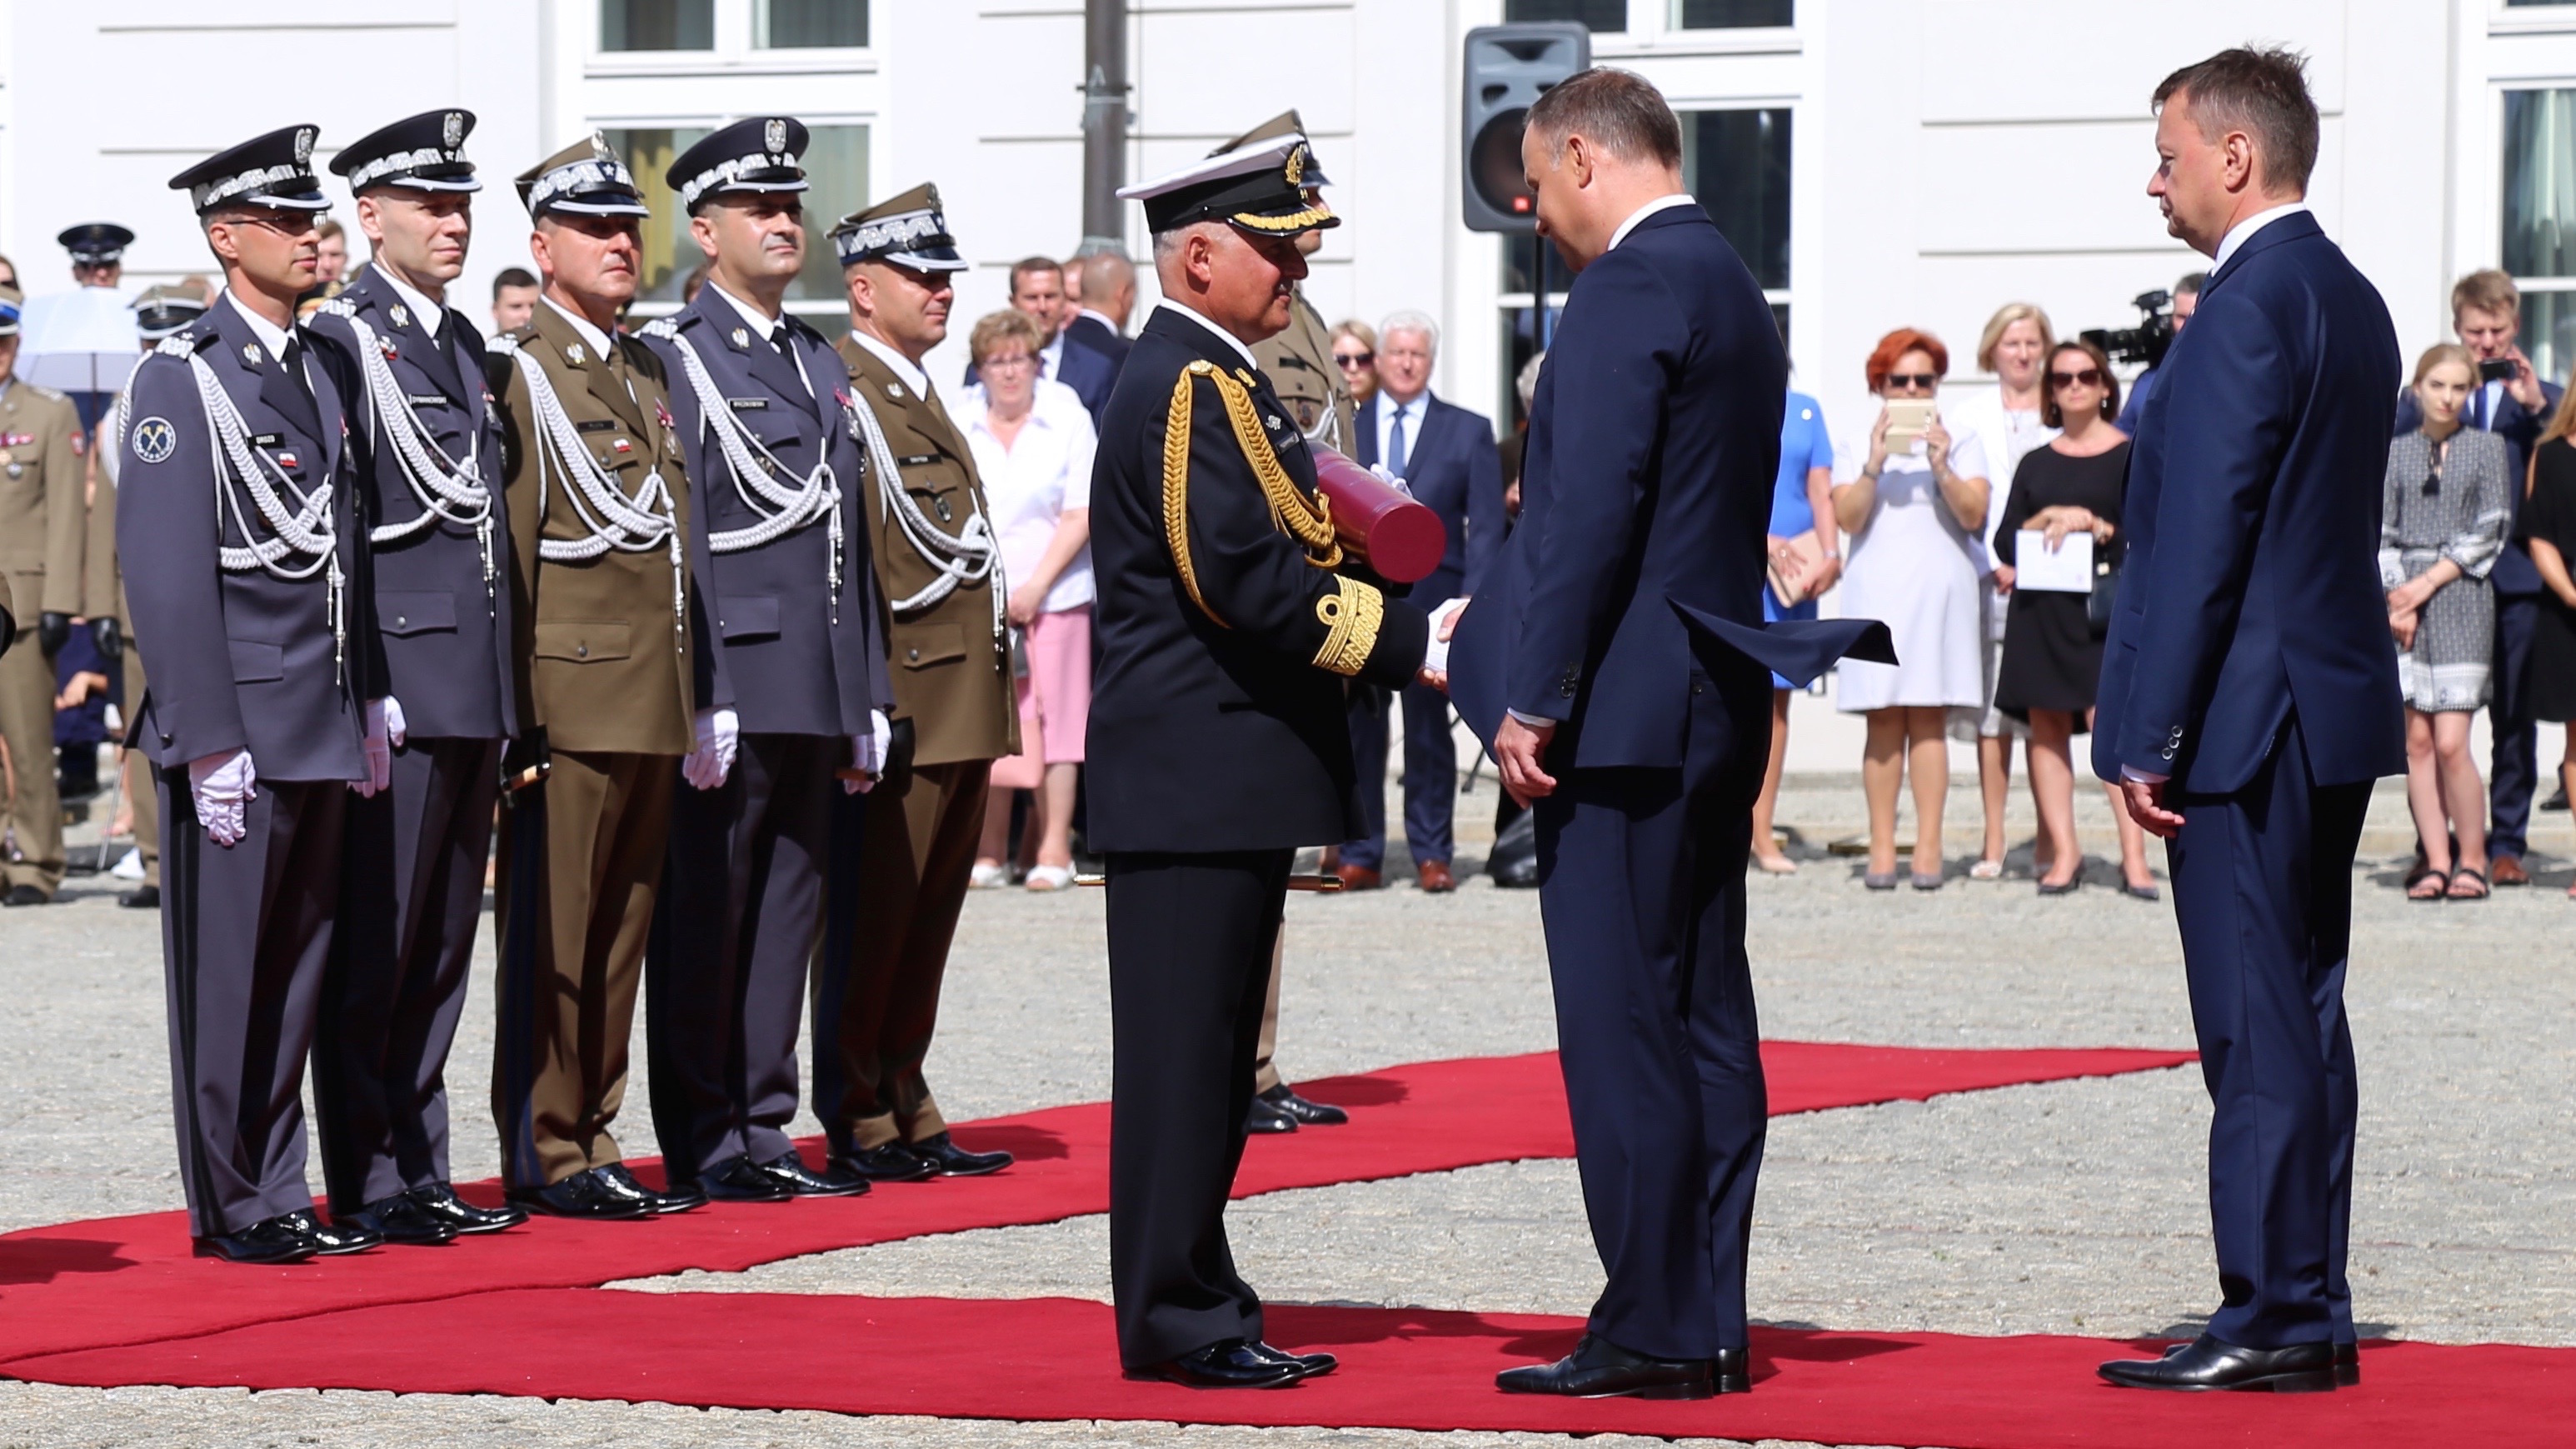 Jedynym wiceadmirałem w służbie czynnej jest od 15 sierpnia 2018 r. dowódca COM-DKM Krzysztof Jaworski. Fot. Rafał Lesiecki / Defence24.pl